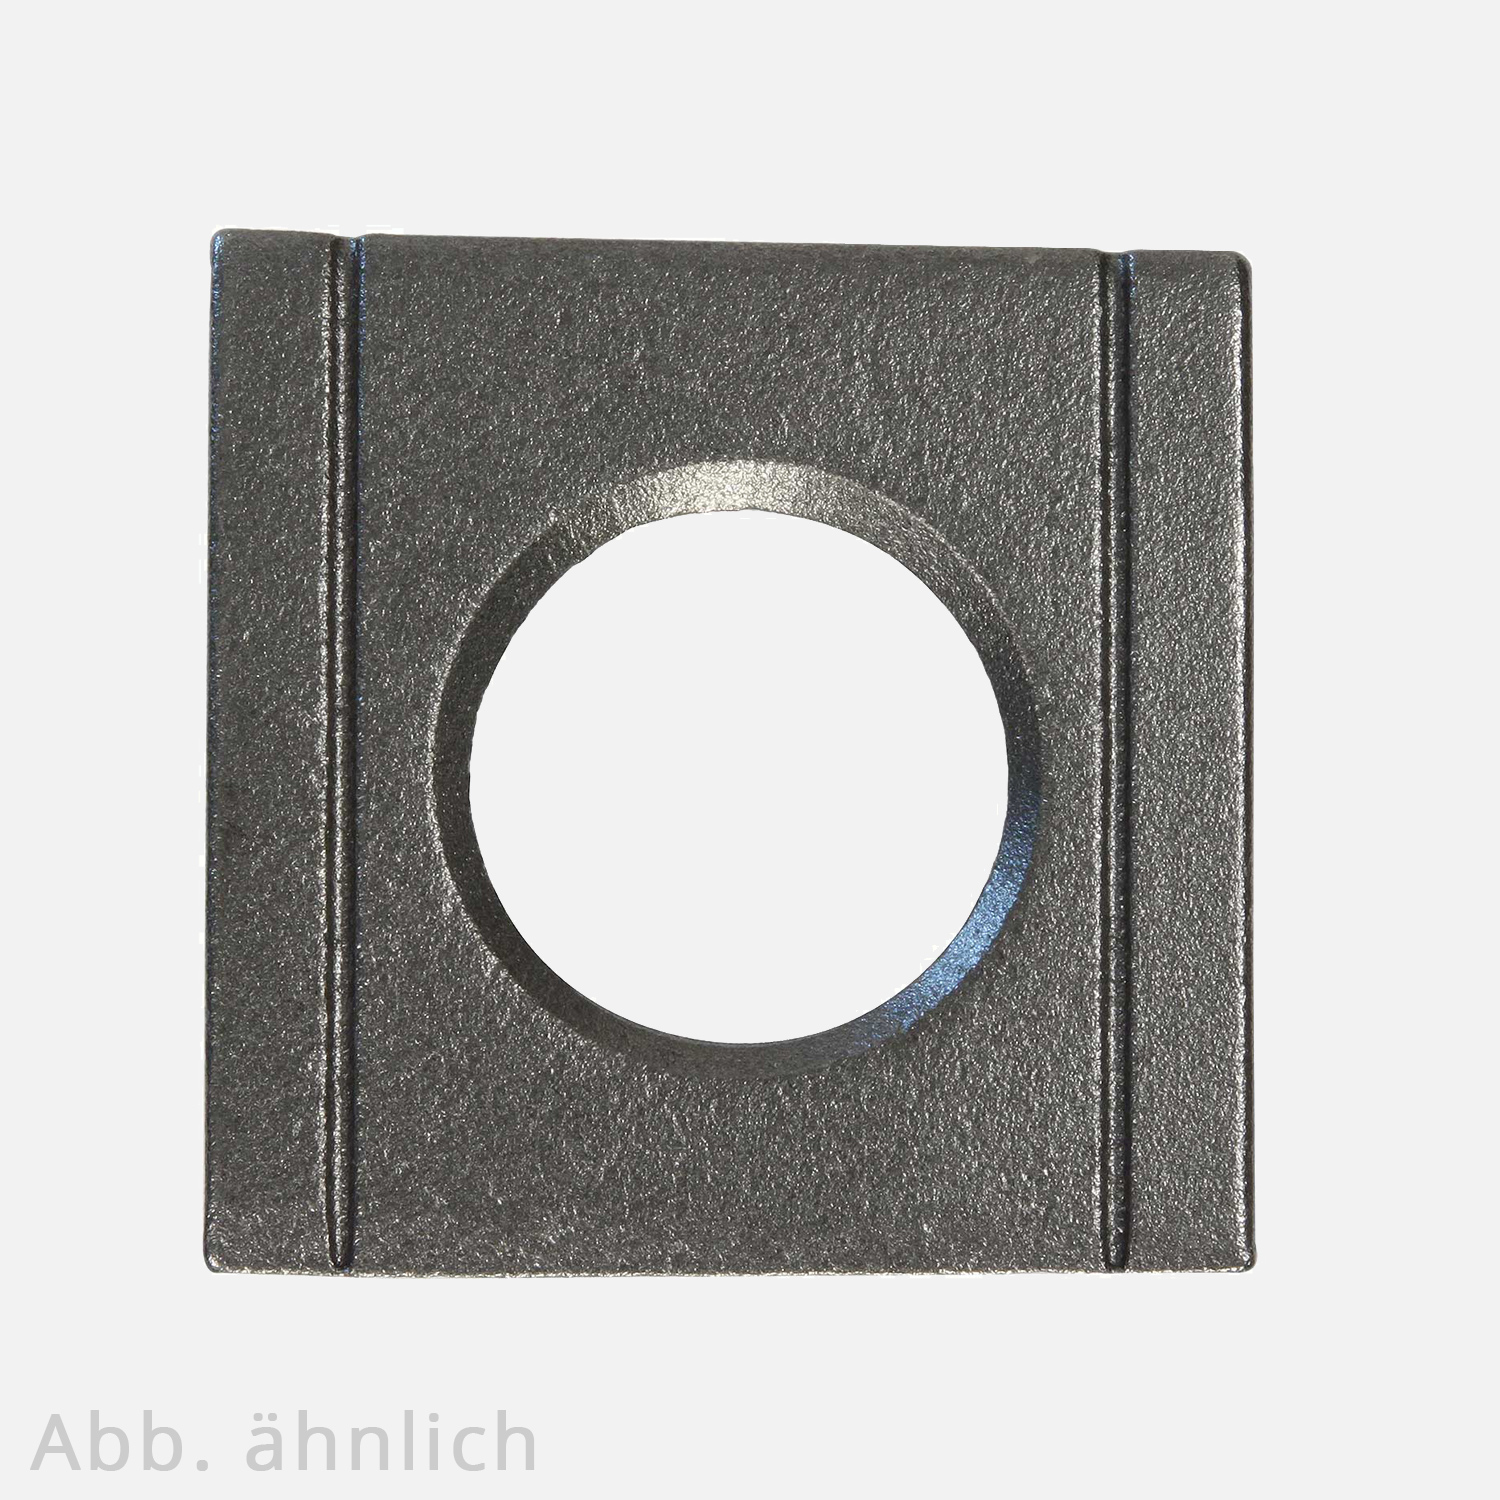 1 Vierkantscheibe - keilförmig 8% - 28 mm - DIN 6918 - Stahl vergütet